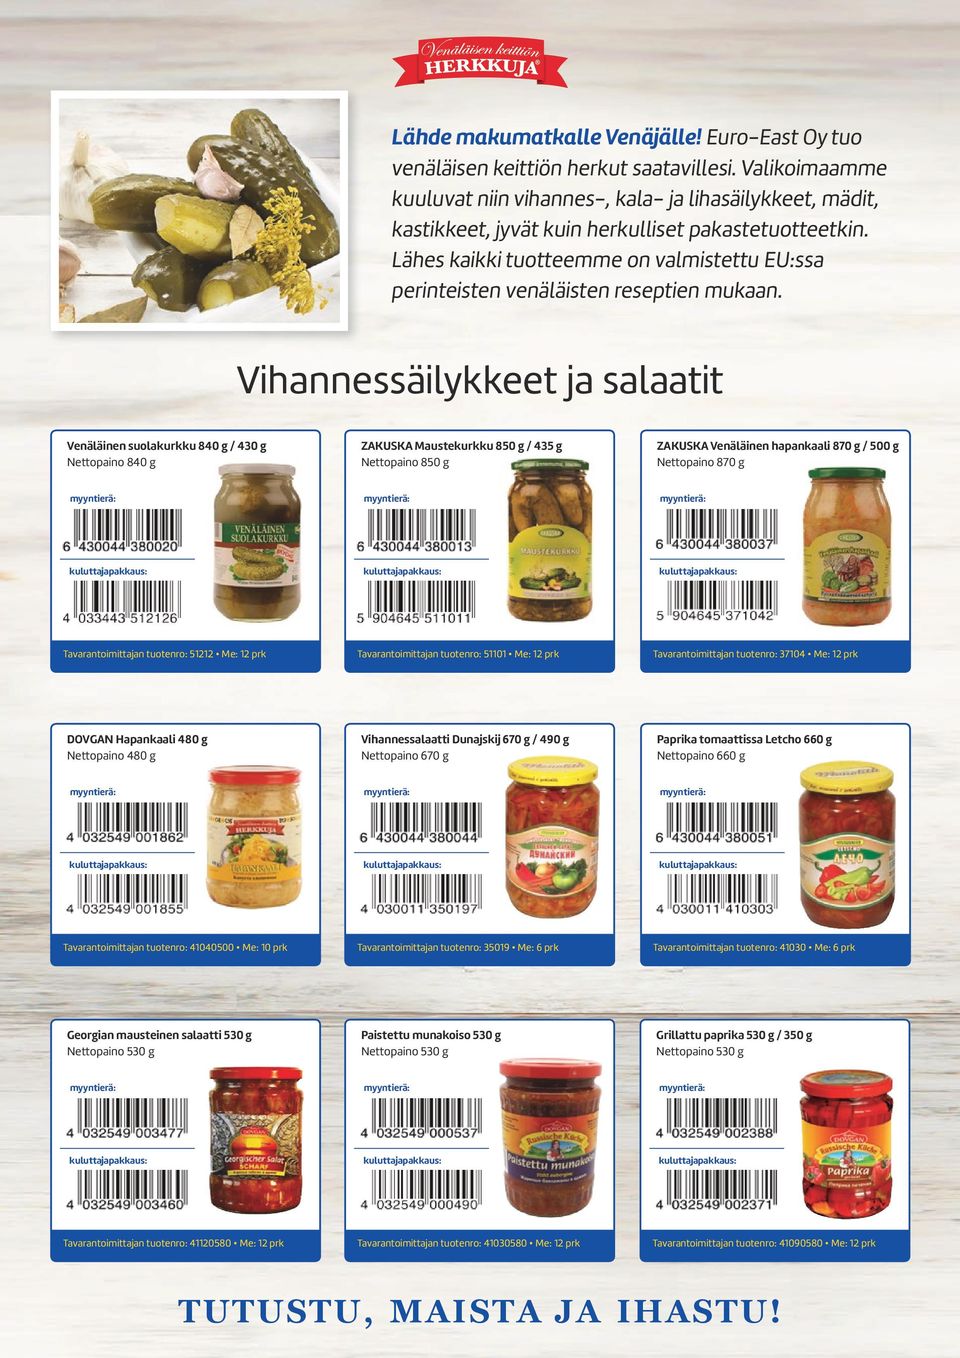 Lähes kaikki tuotteemme on valmistettu EU:ssa perinteisten venäläisten reseptien mukaan.